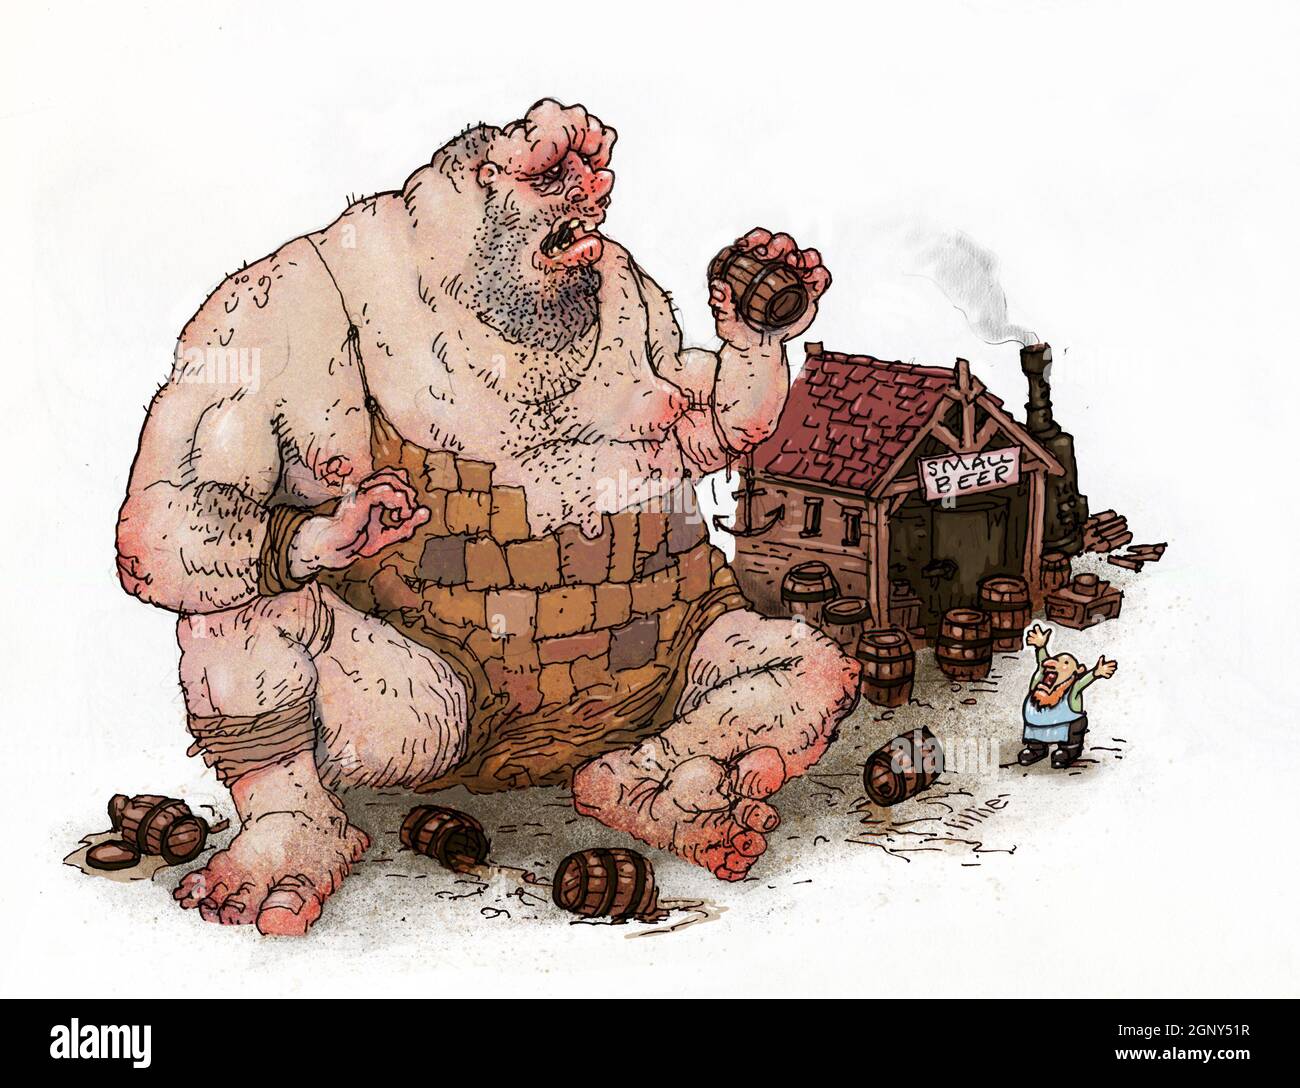 Kunstdarstellung eines betrunkenen Riesen, der Bier aus einer Brauerei raubt, während ein Brauer wütend auf ihn schaut. Fantasy-Fiktion, Mythos, Legende, Rollenspiele, D&D, Folklore Stockfoto